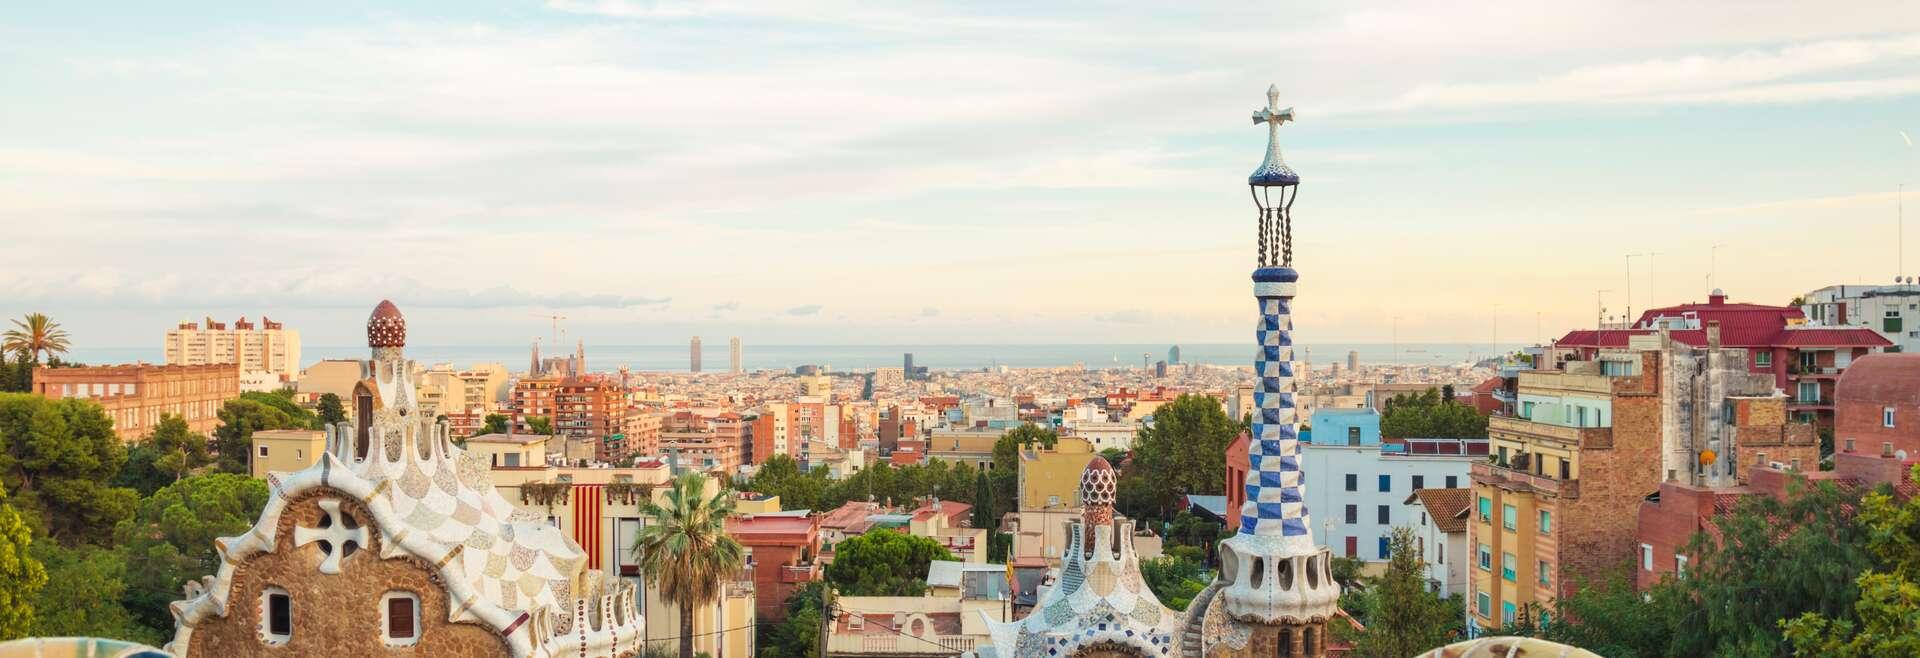 Séjour linguistique Espagne, Barcelone, Gaudi